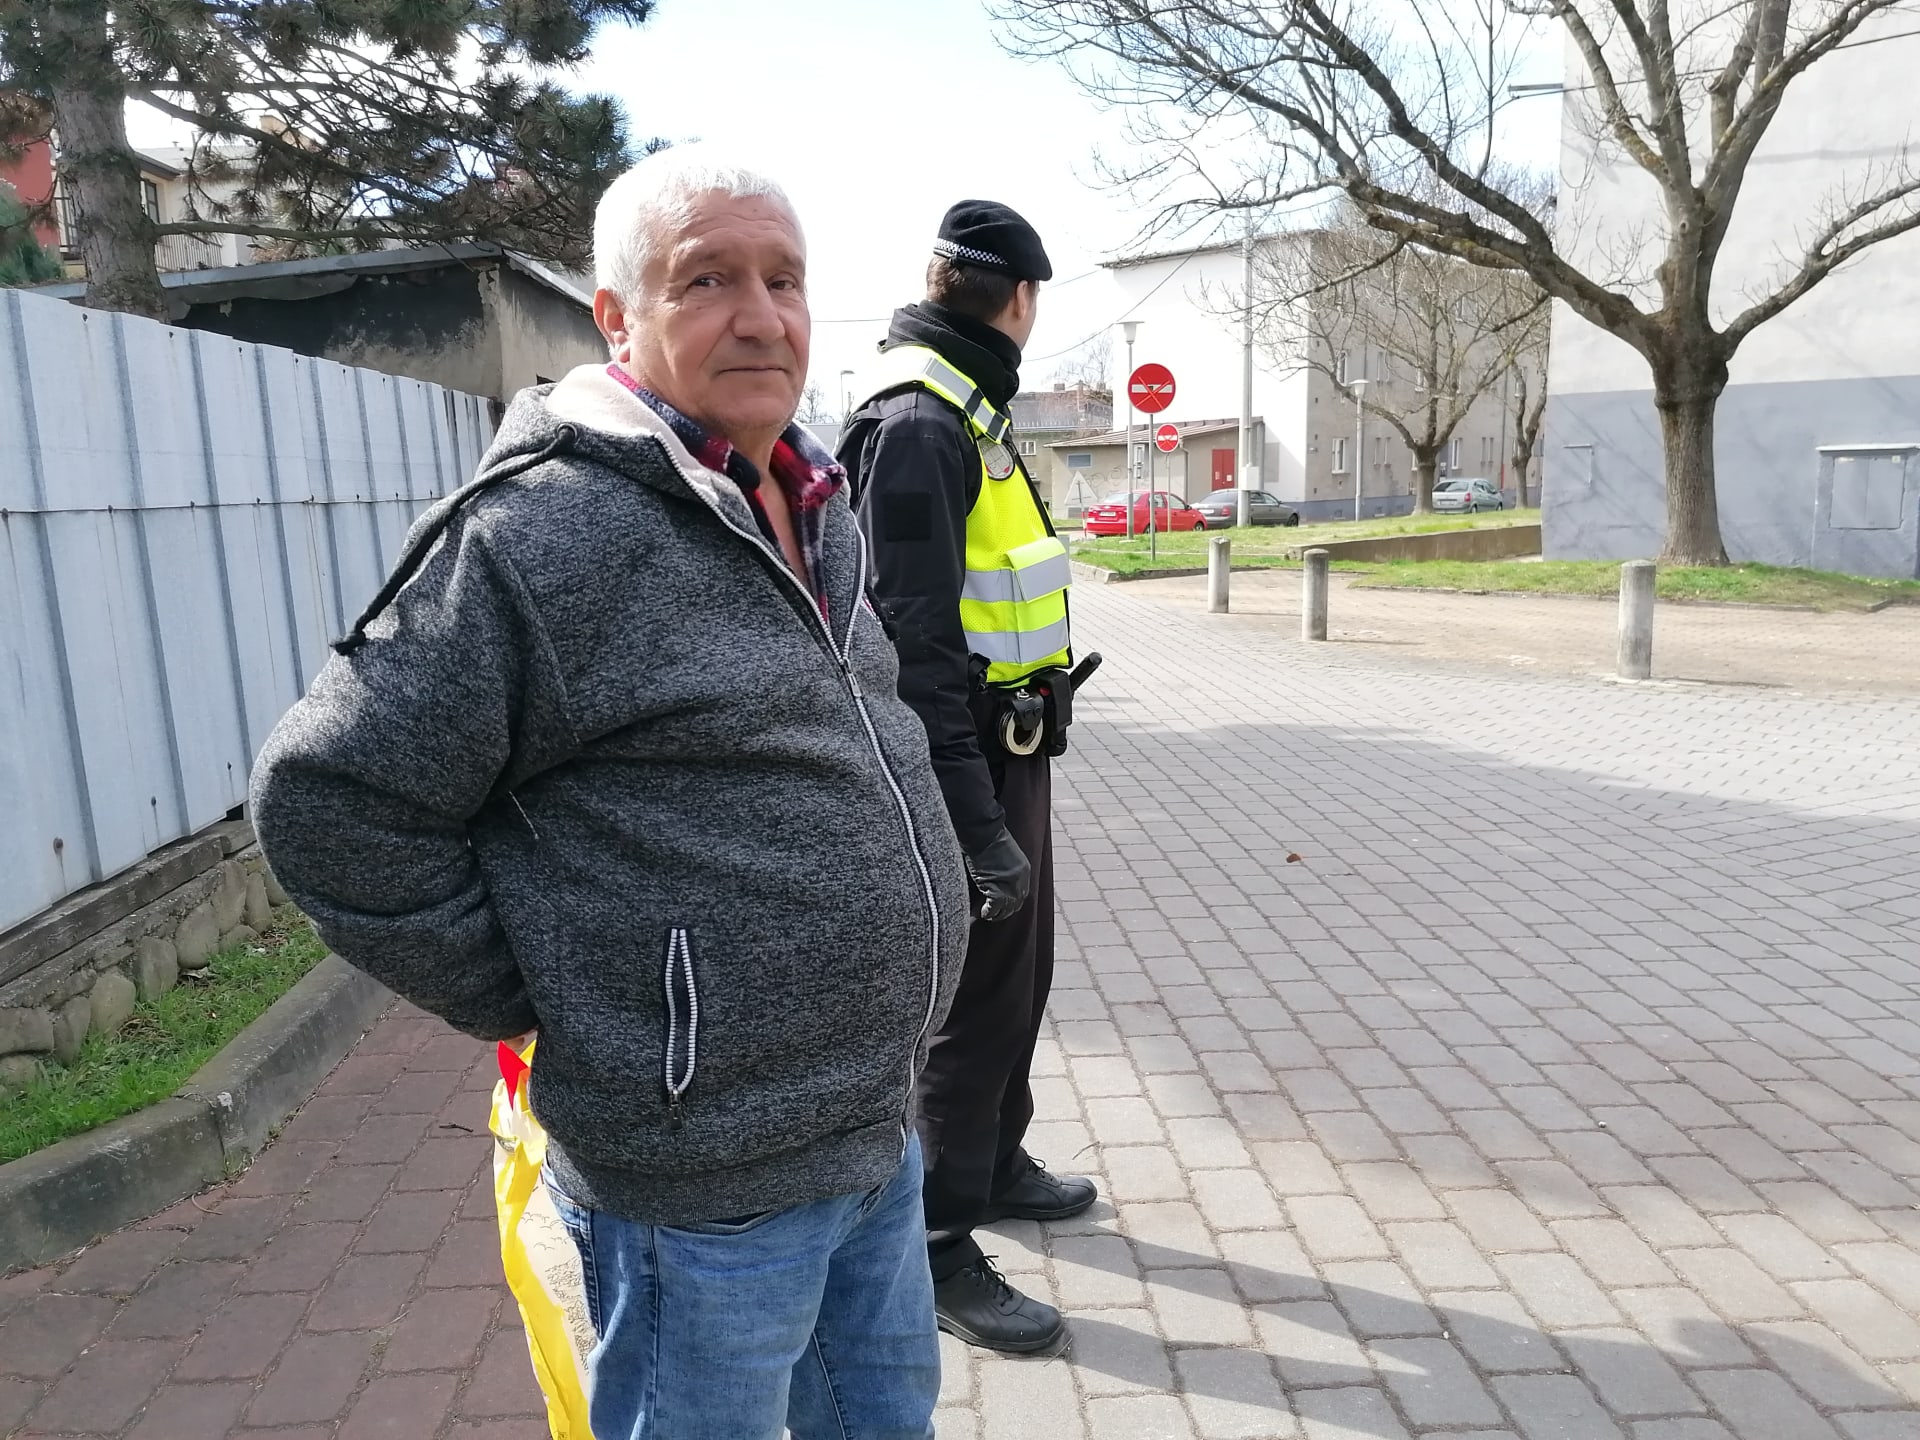 Svědek výbuchu v Ostravě. 70letý Juraj Dotko žije v domě přímo naproti výkopu, v němž v pátek v osm ráno explodovala stará munice. Letecká puma vybuchla v ulici mezi činžáky, které jsou vidět v pozadí.